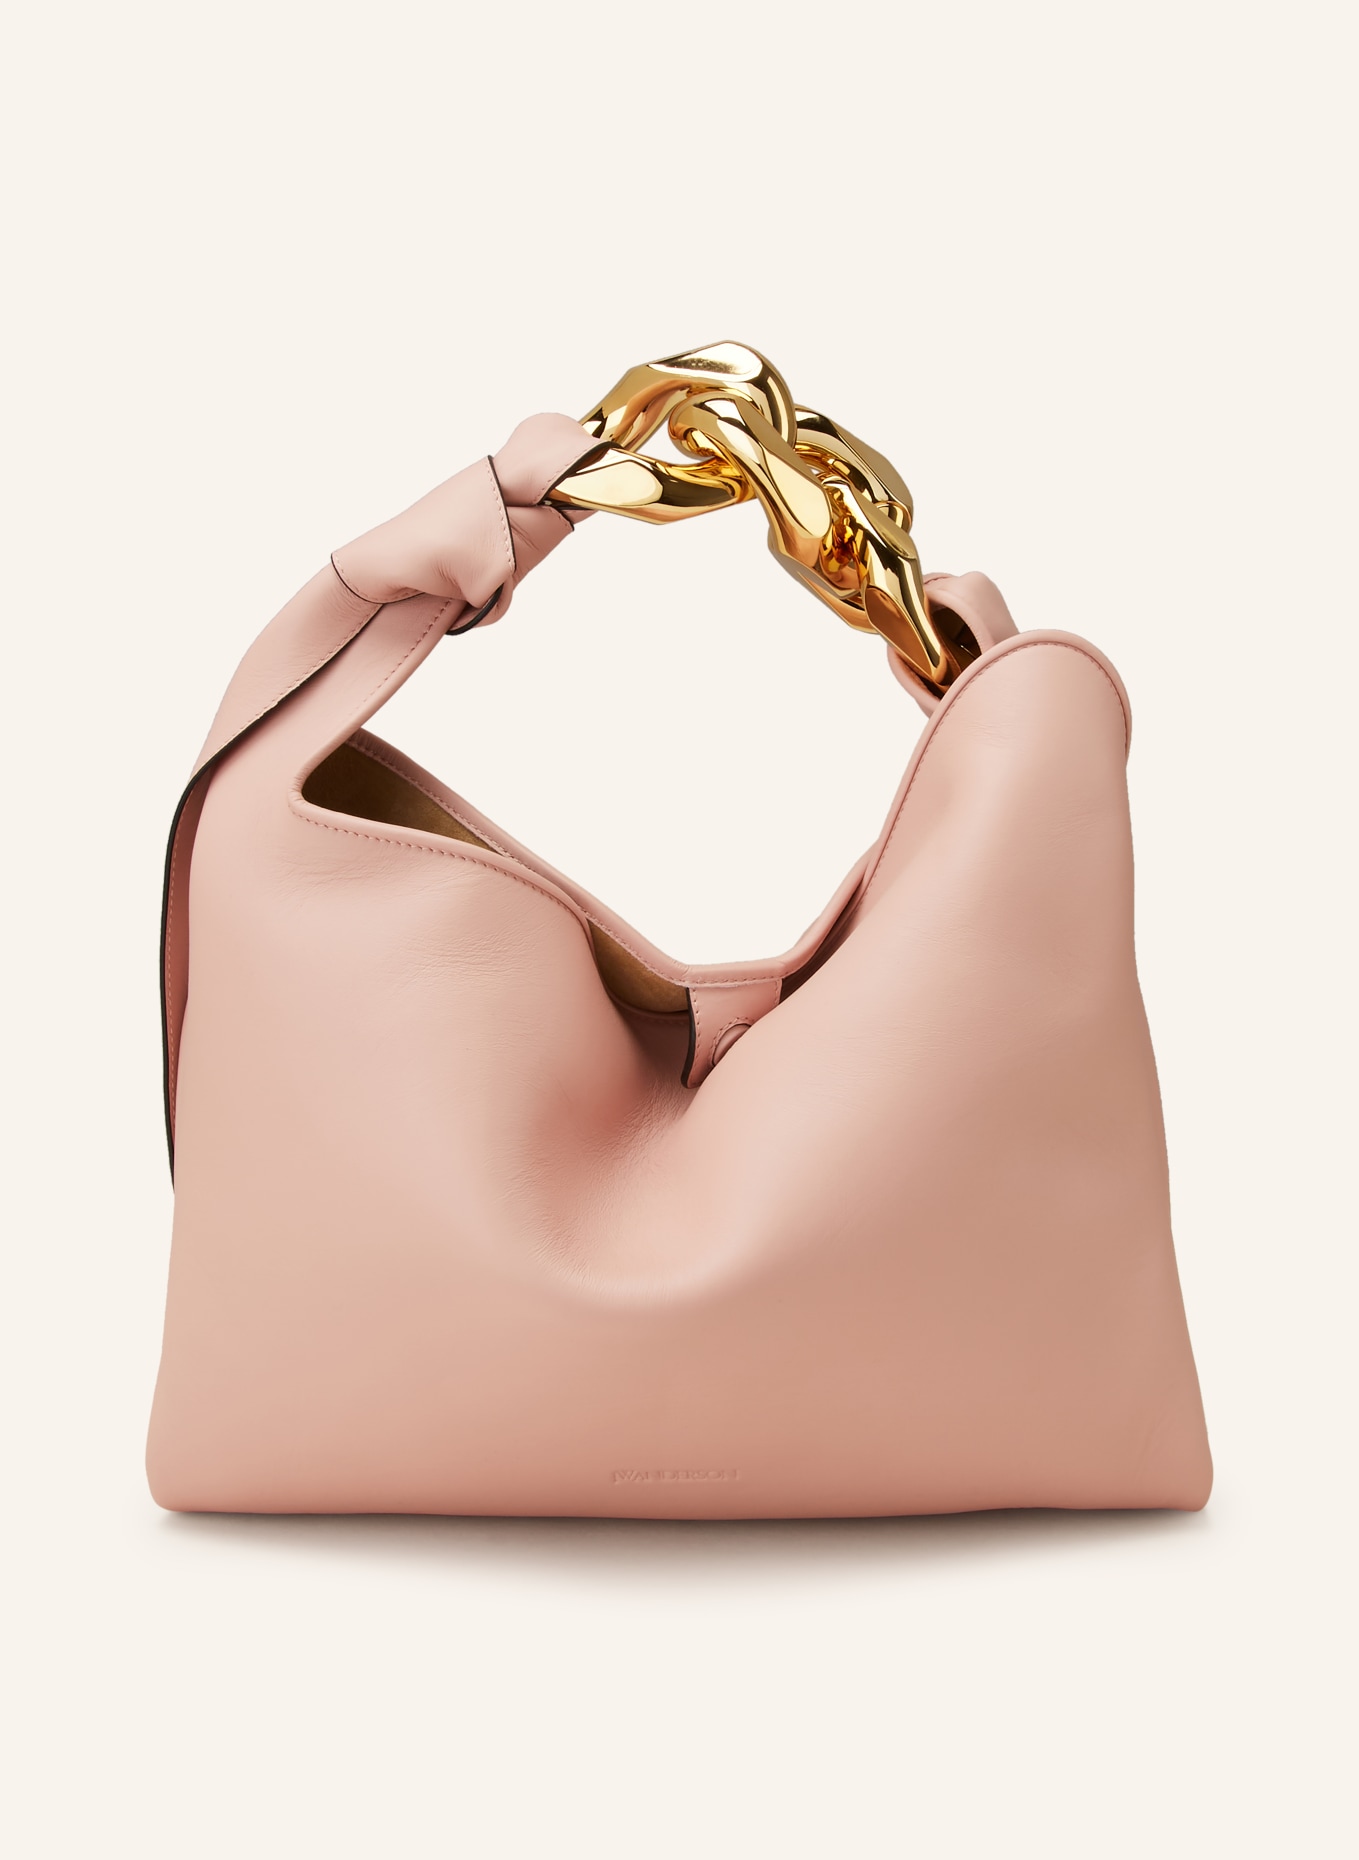 JW ANDERSON Hobo-Bag CHAIN SMALL, Farbe: ROSÉ (Bild 1)